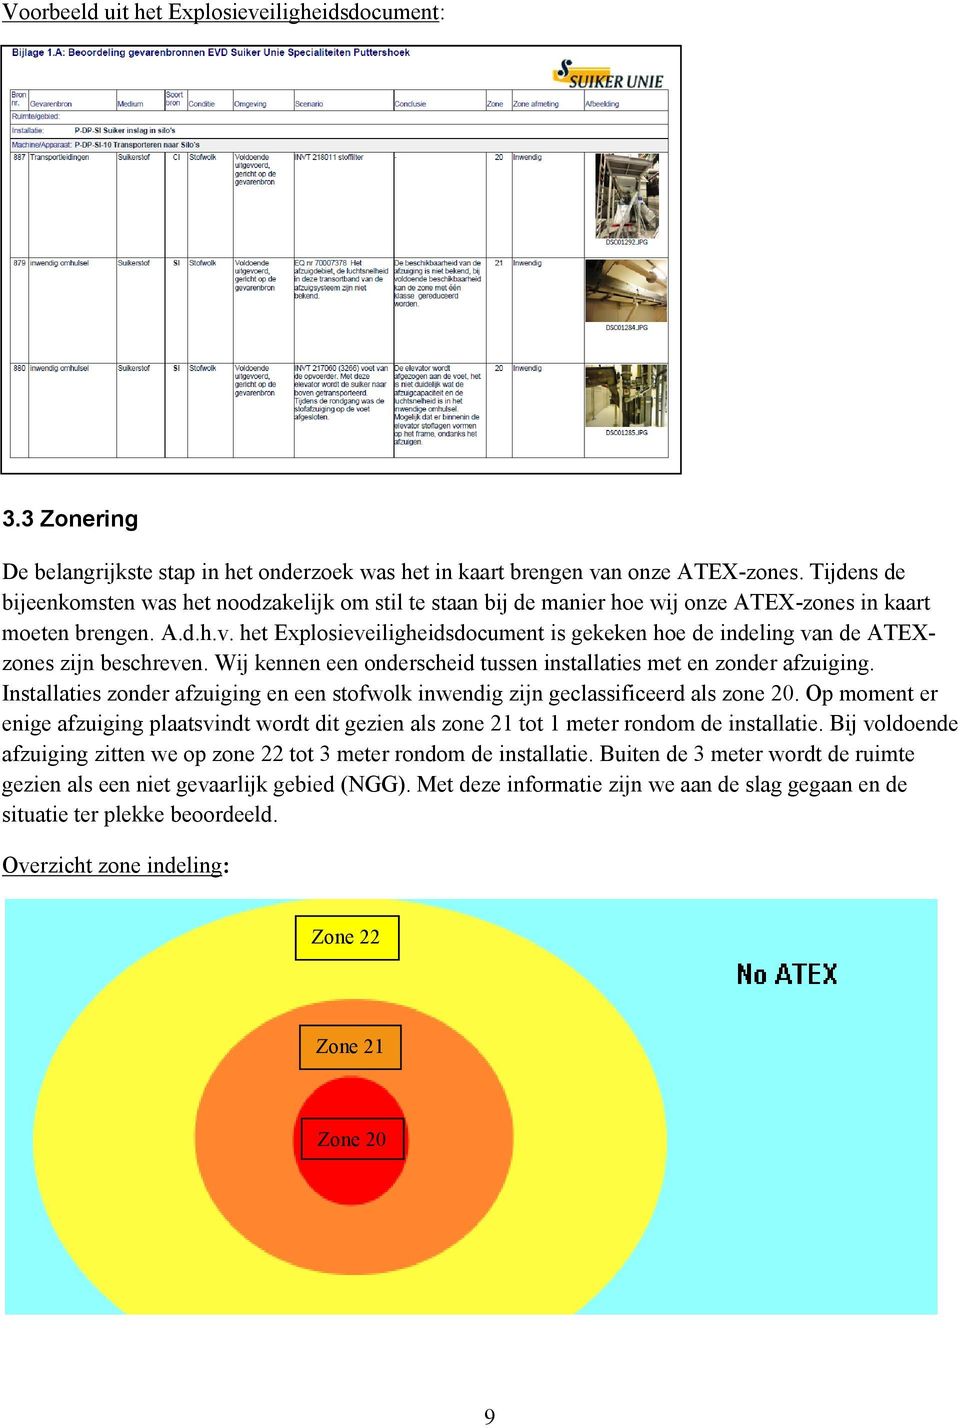 het Explosieveiligheidsdocument is gekeken hoe de indeling van de ATEXzones zijn beschreven. Wij kennen een onderscheid tussen installaties met en zonder afzuiging.